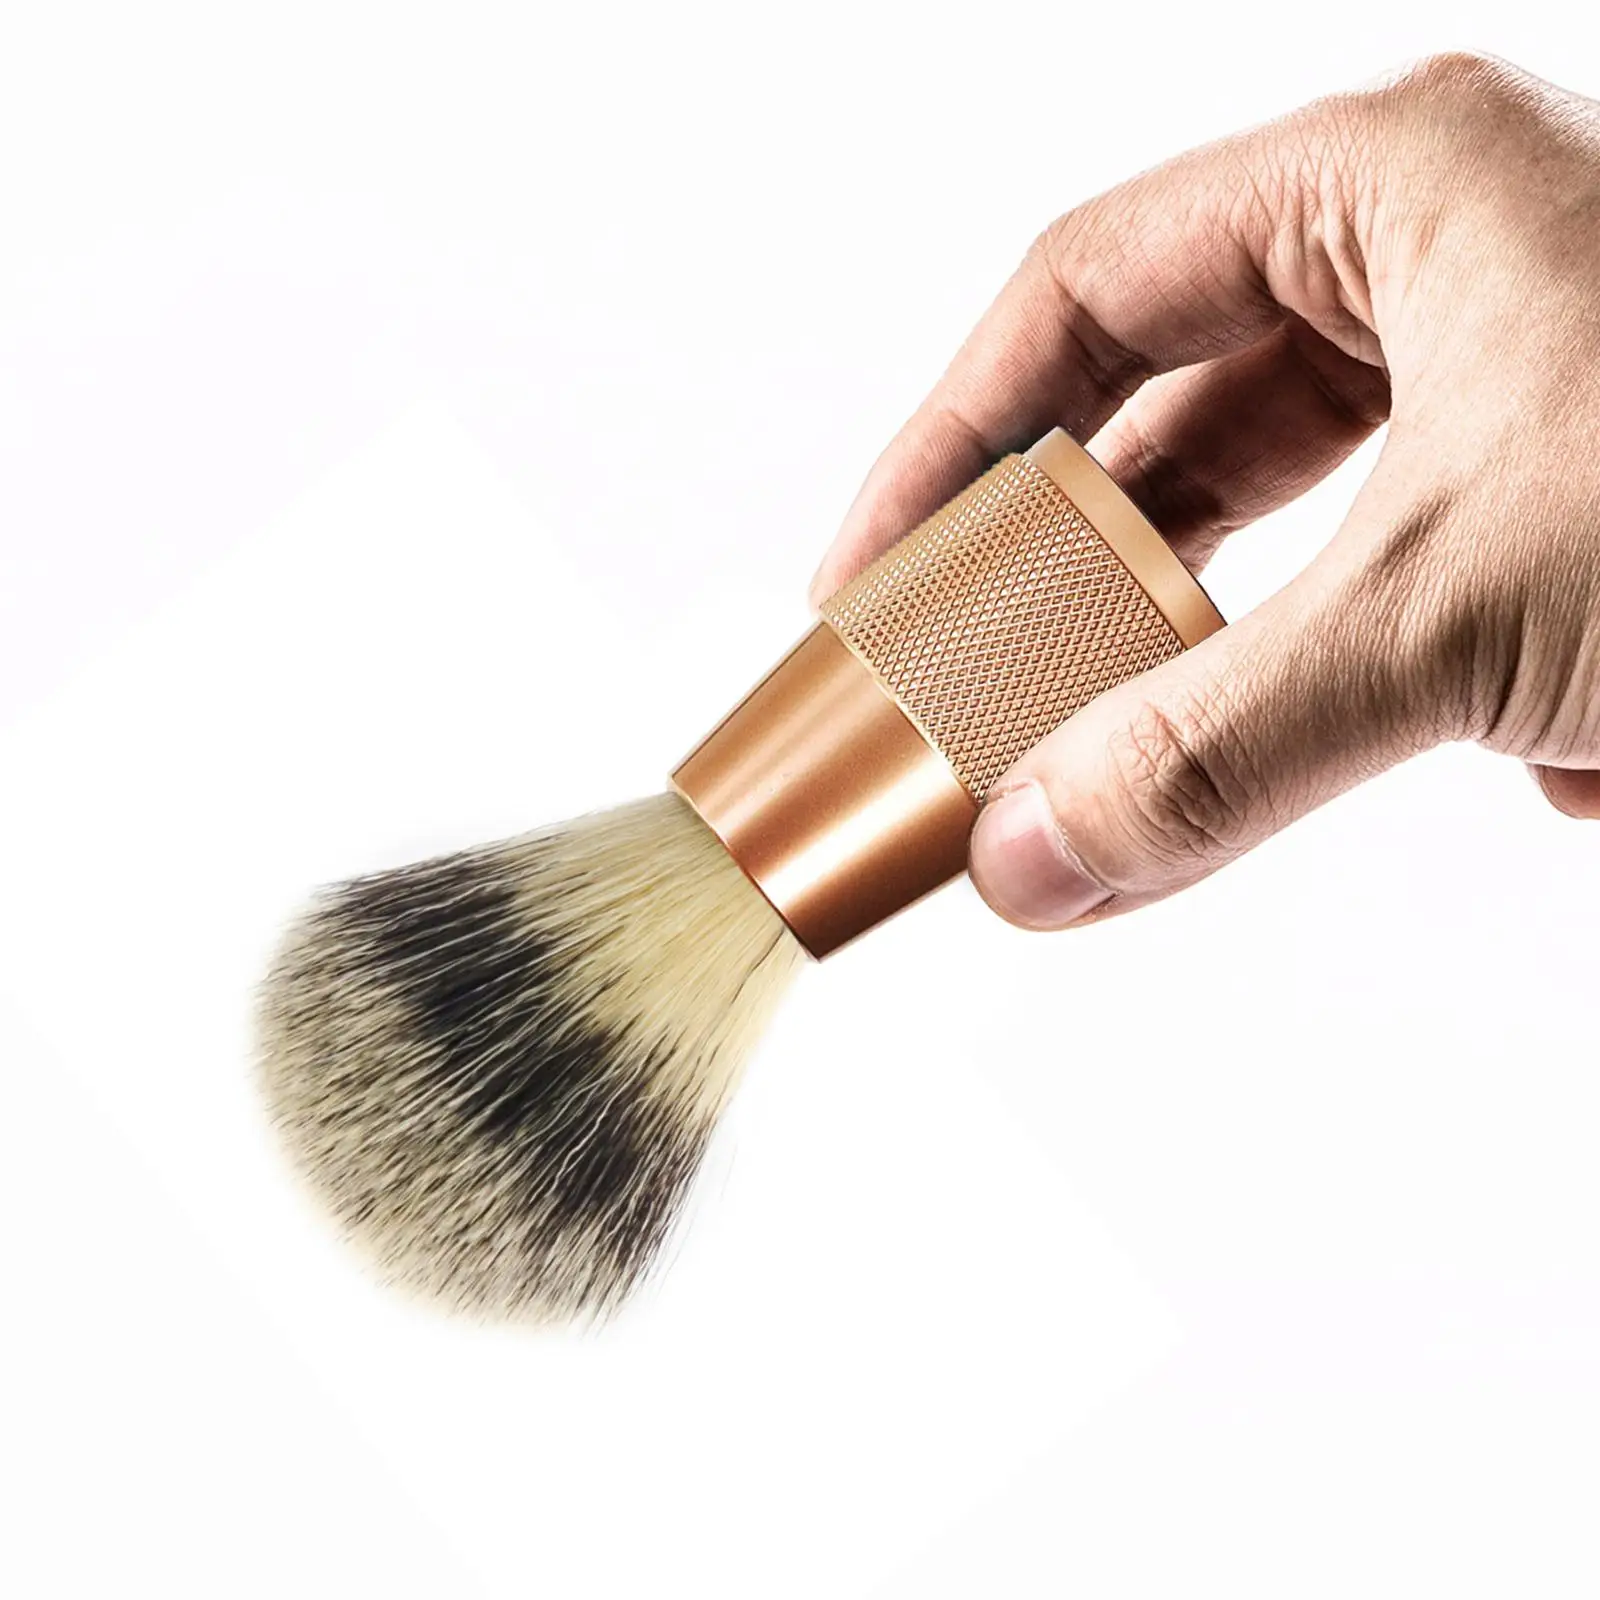 Shaving Brush for Men Shaving Accessory for Wet Shave Handled Professional Height 11cm Beard Brush Tool Face Hair Cleaning